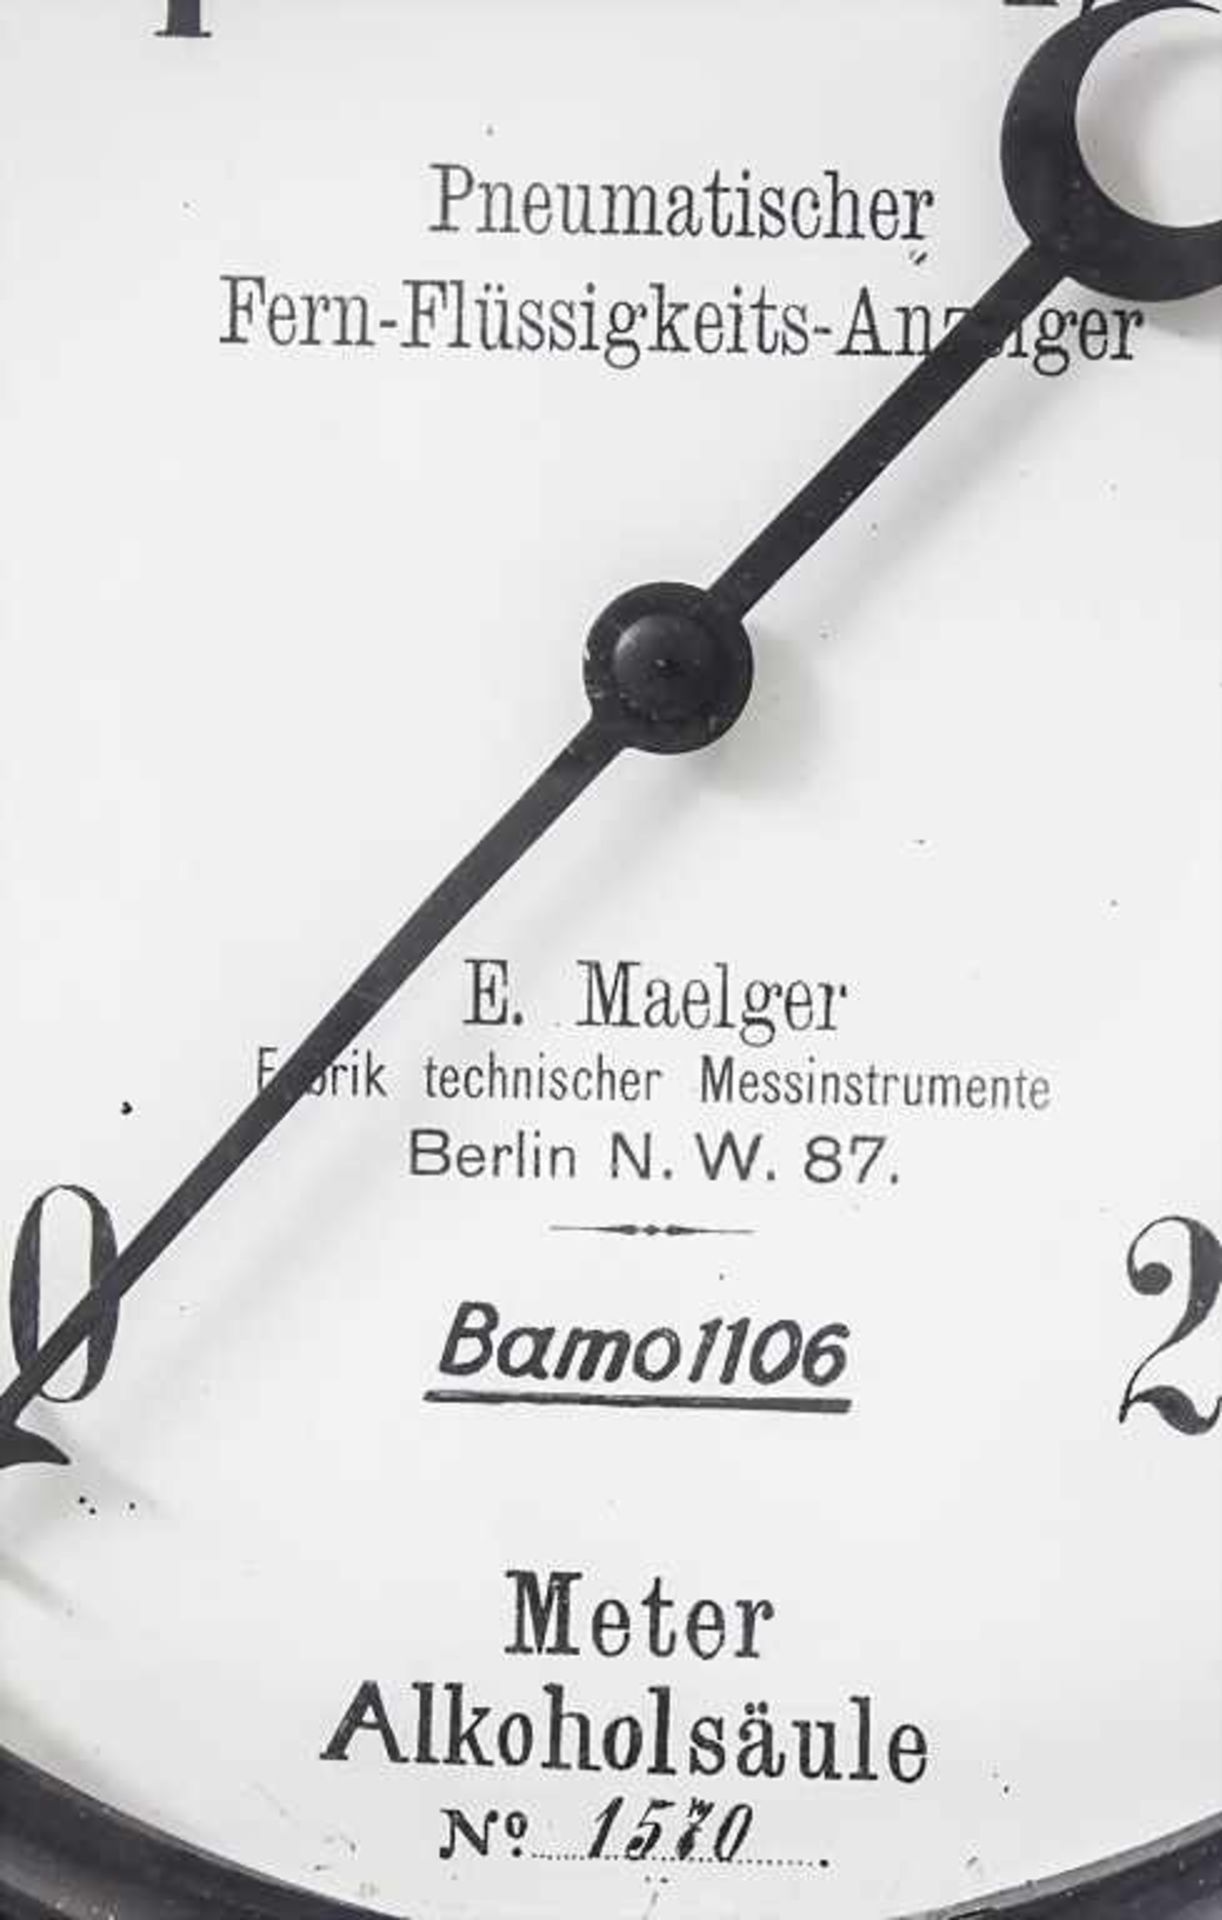 Pneumatischer Fern-Flüssigkeit-Anzeiger, E. Maegler, Berlin - Image 3 of 6